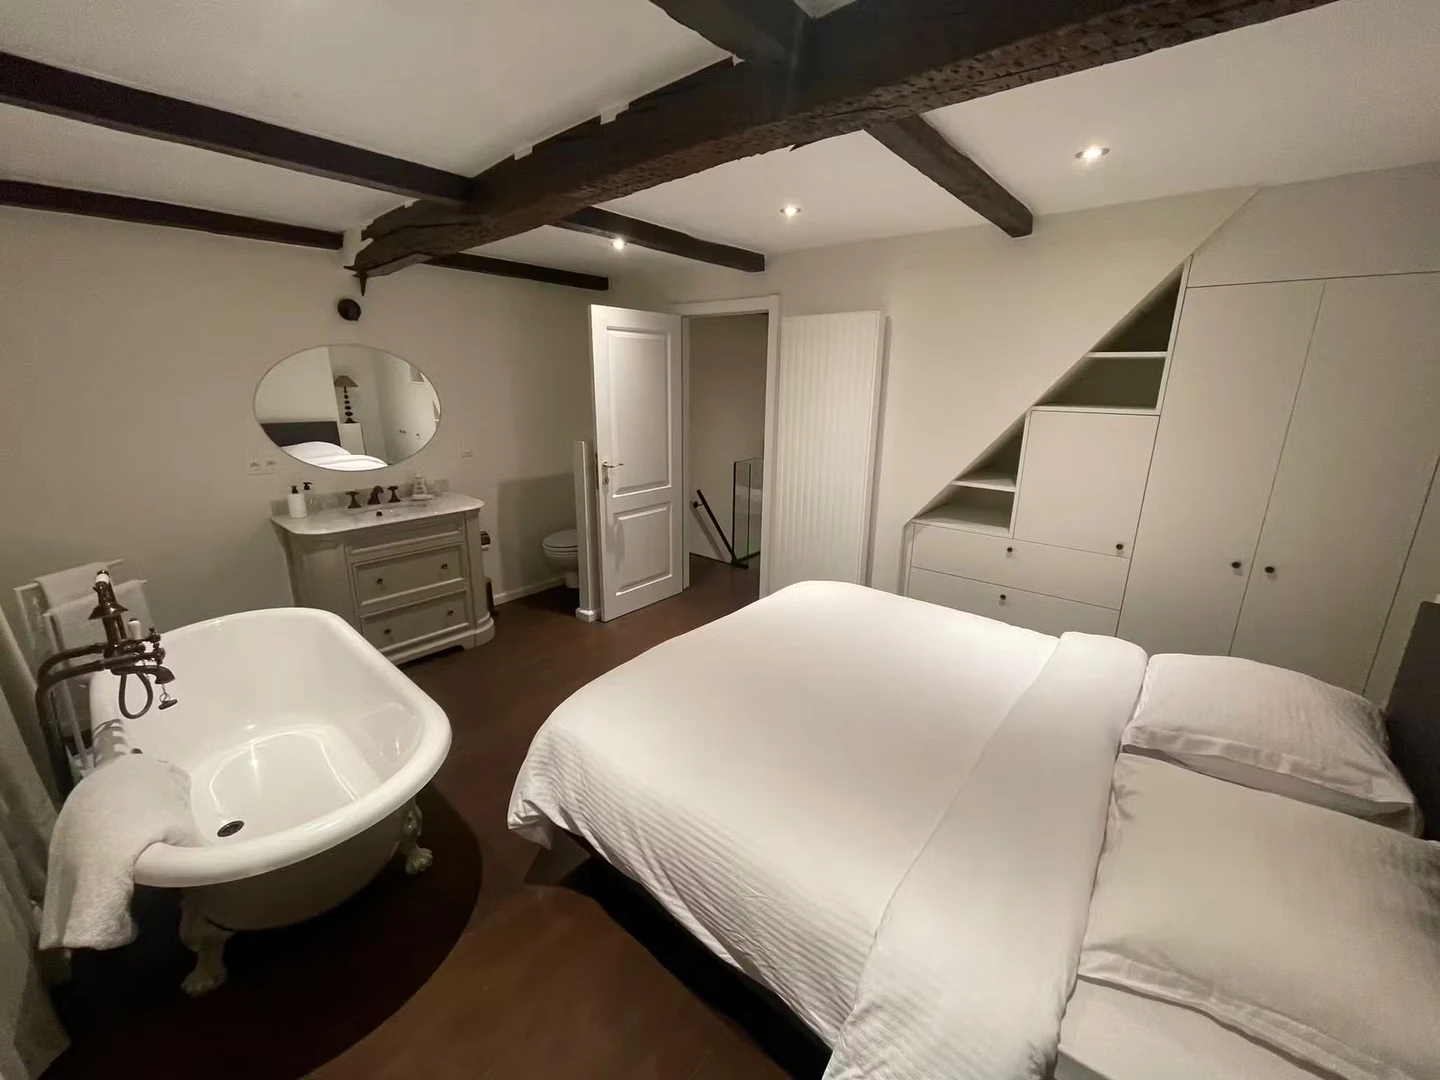 Gent içinde 3 yatak odalı konaklama